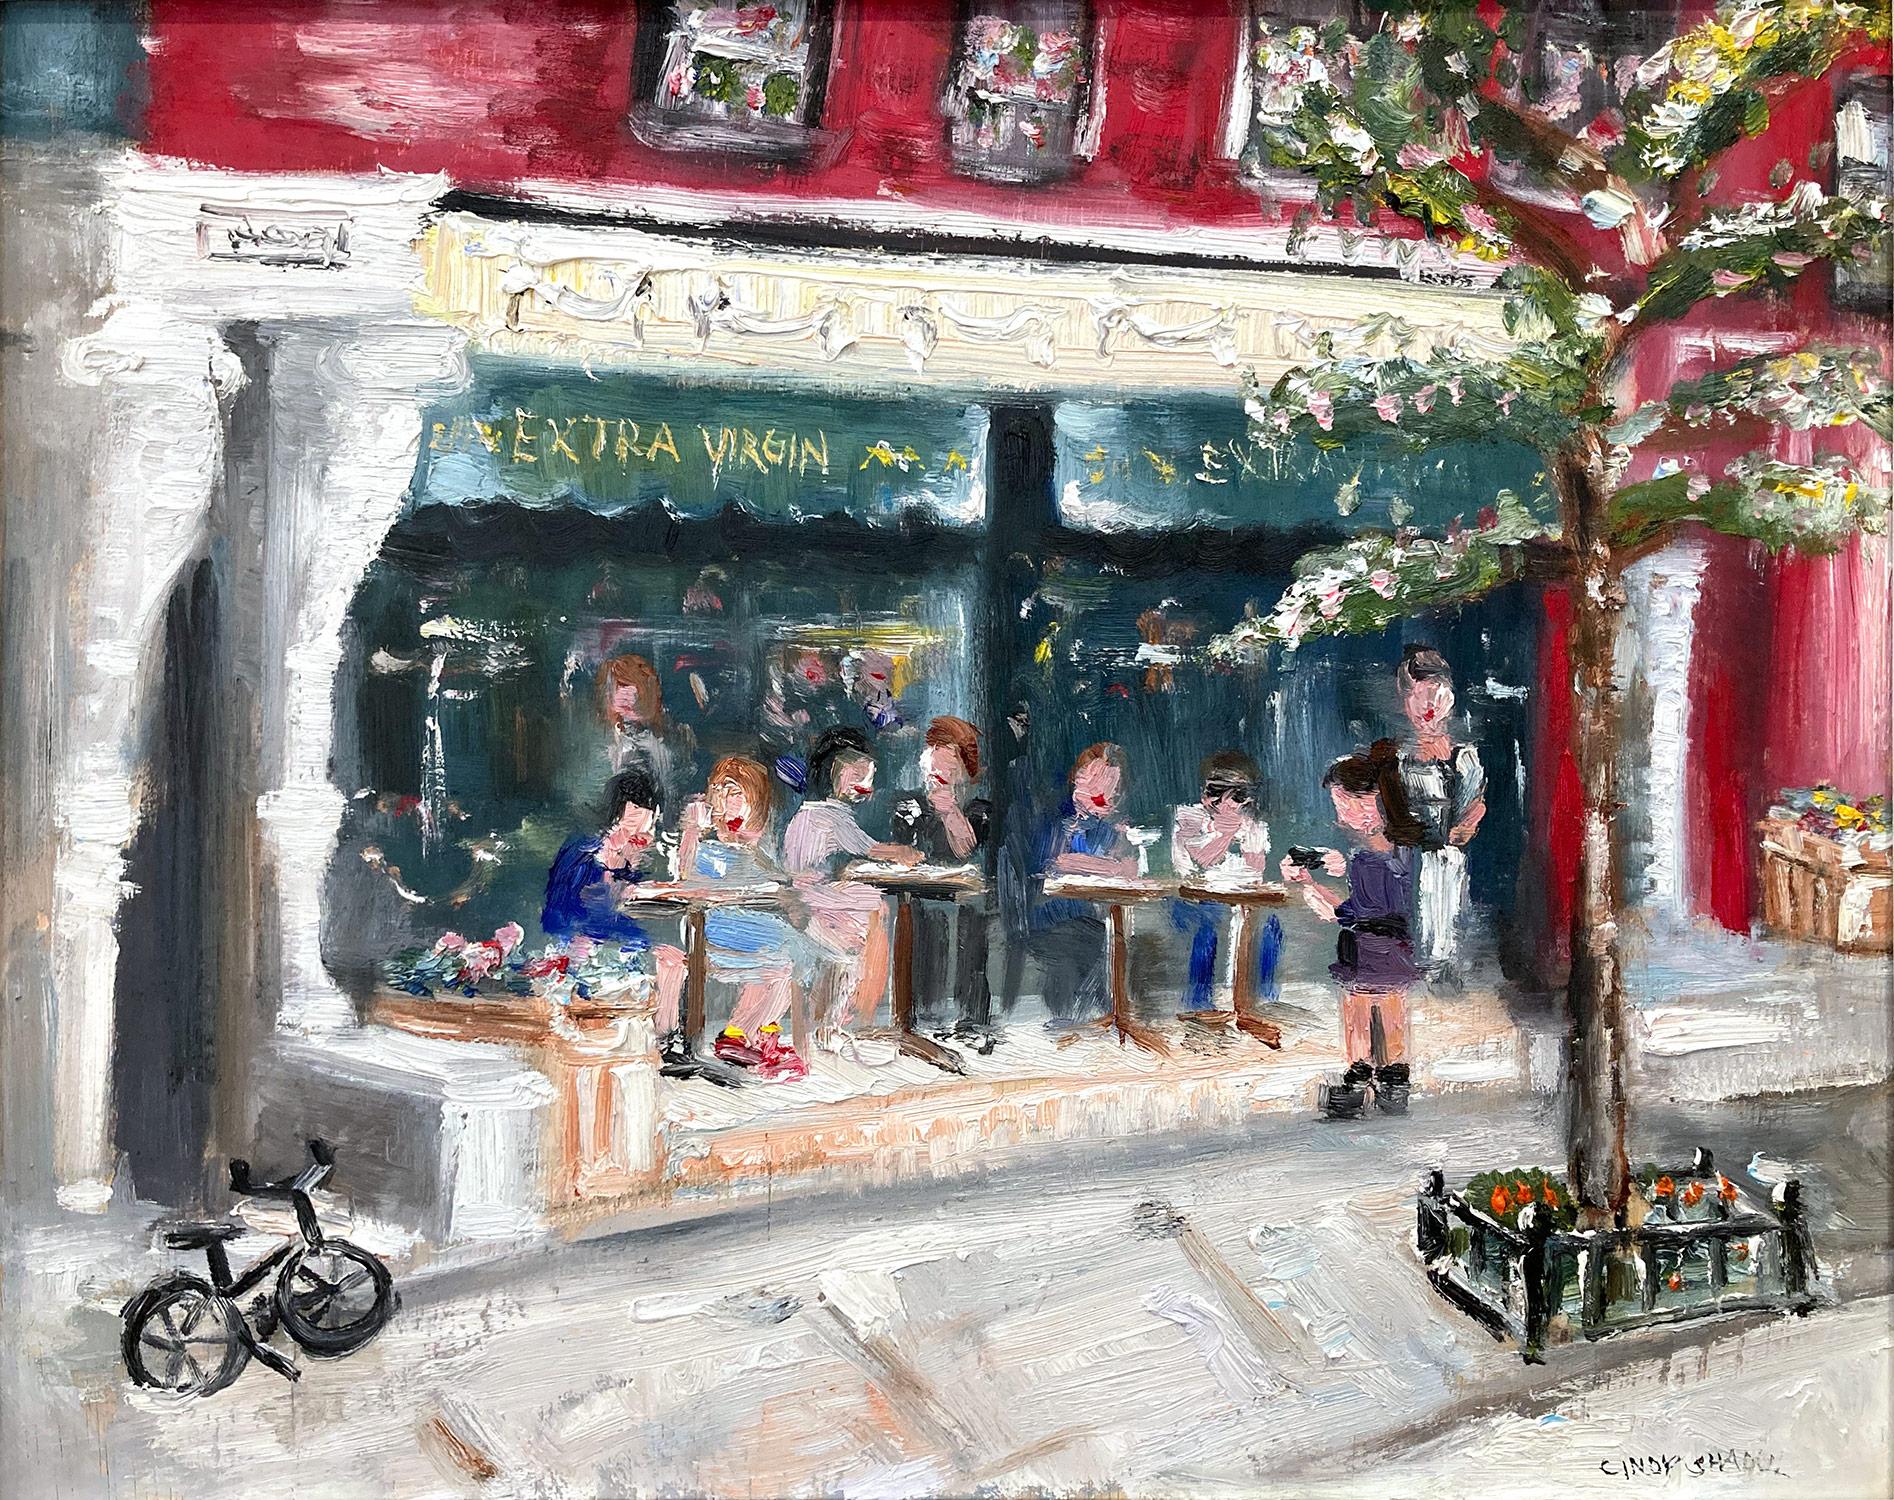 Buntes impressionistisches Ölgemälde „Brunch at Extra Virgin“ aus dem Restaurant  – Painting von Cindy Shaoul